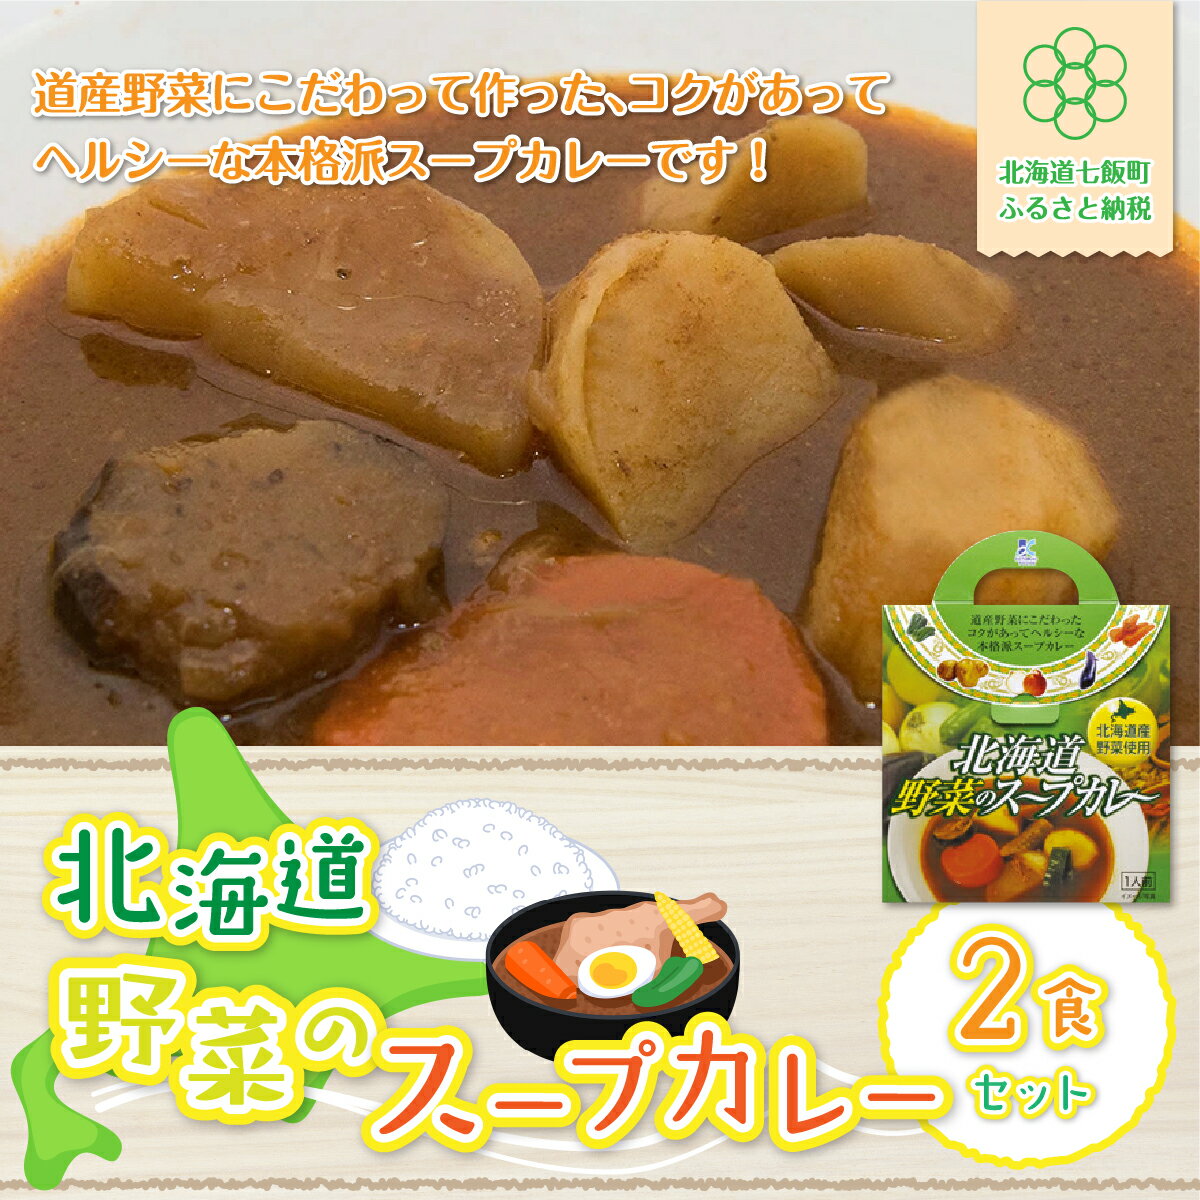 【北海道野菜のスープカレー】2食セット 北海道産野菜使用 スープカレー 野菜 ベジタリアン カレーライス 北海道産 NAO016